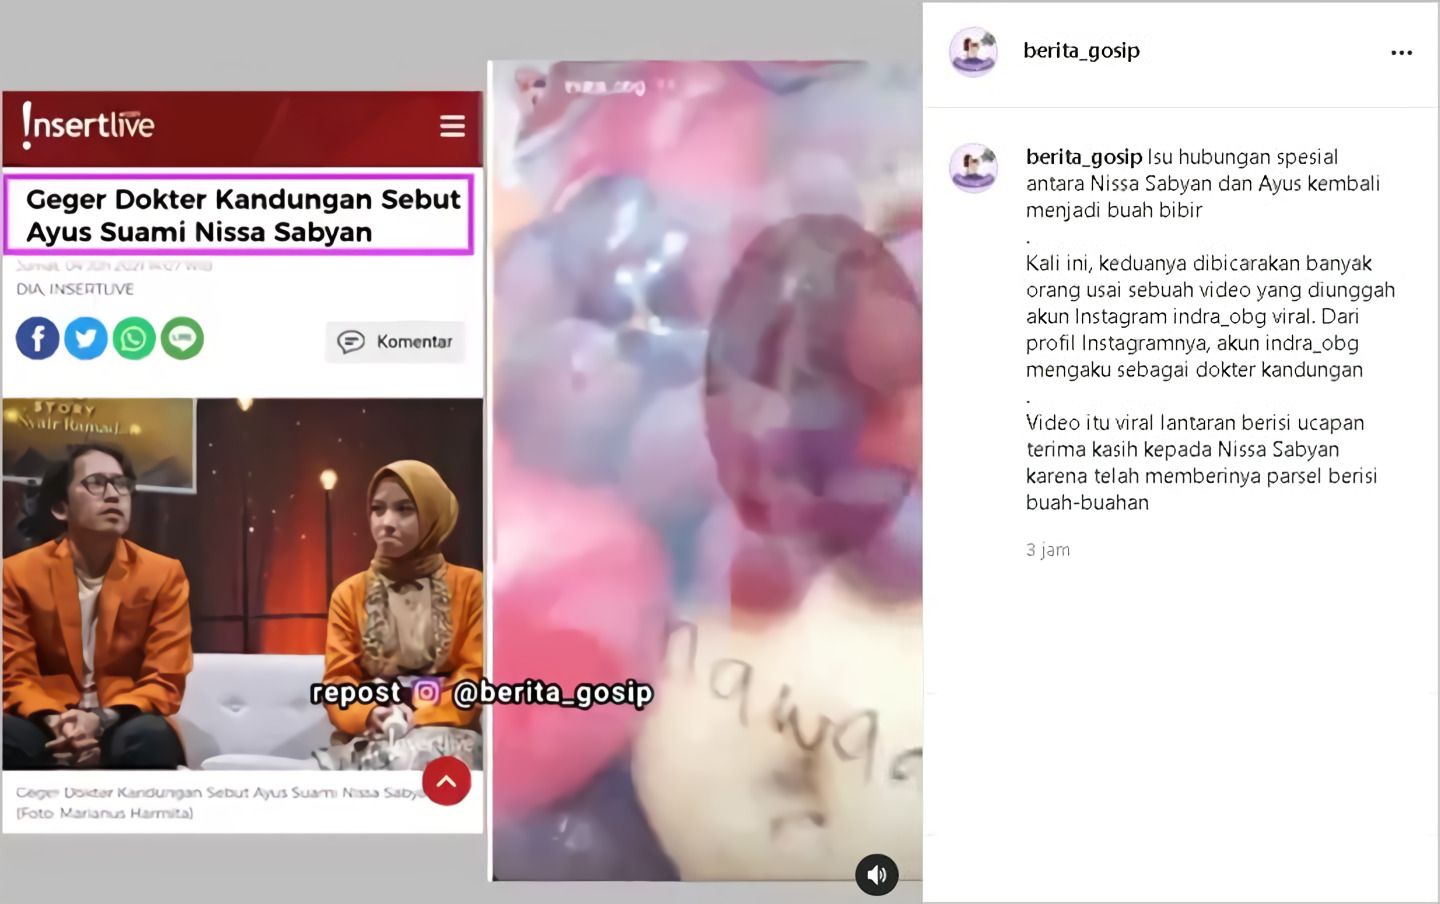 tangkapan layar postingan Instagram @berita_gosip